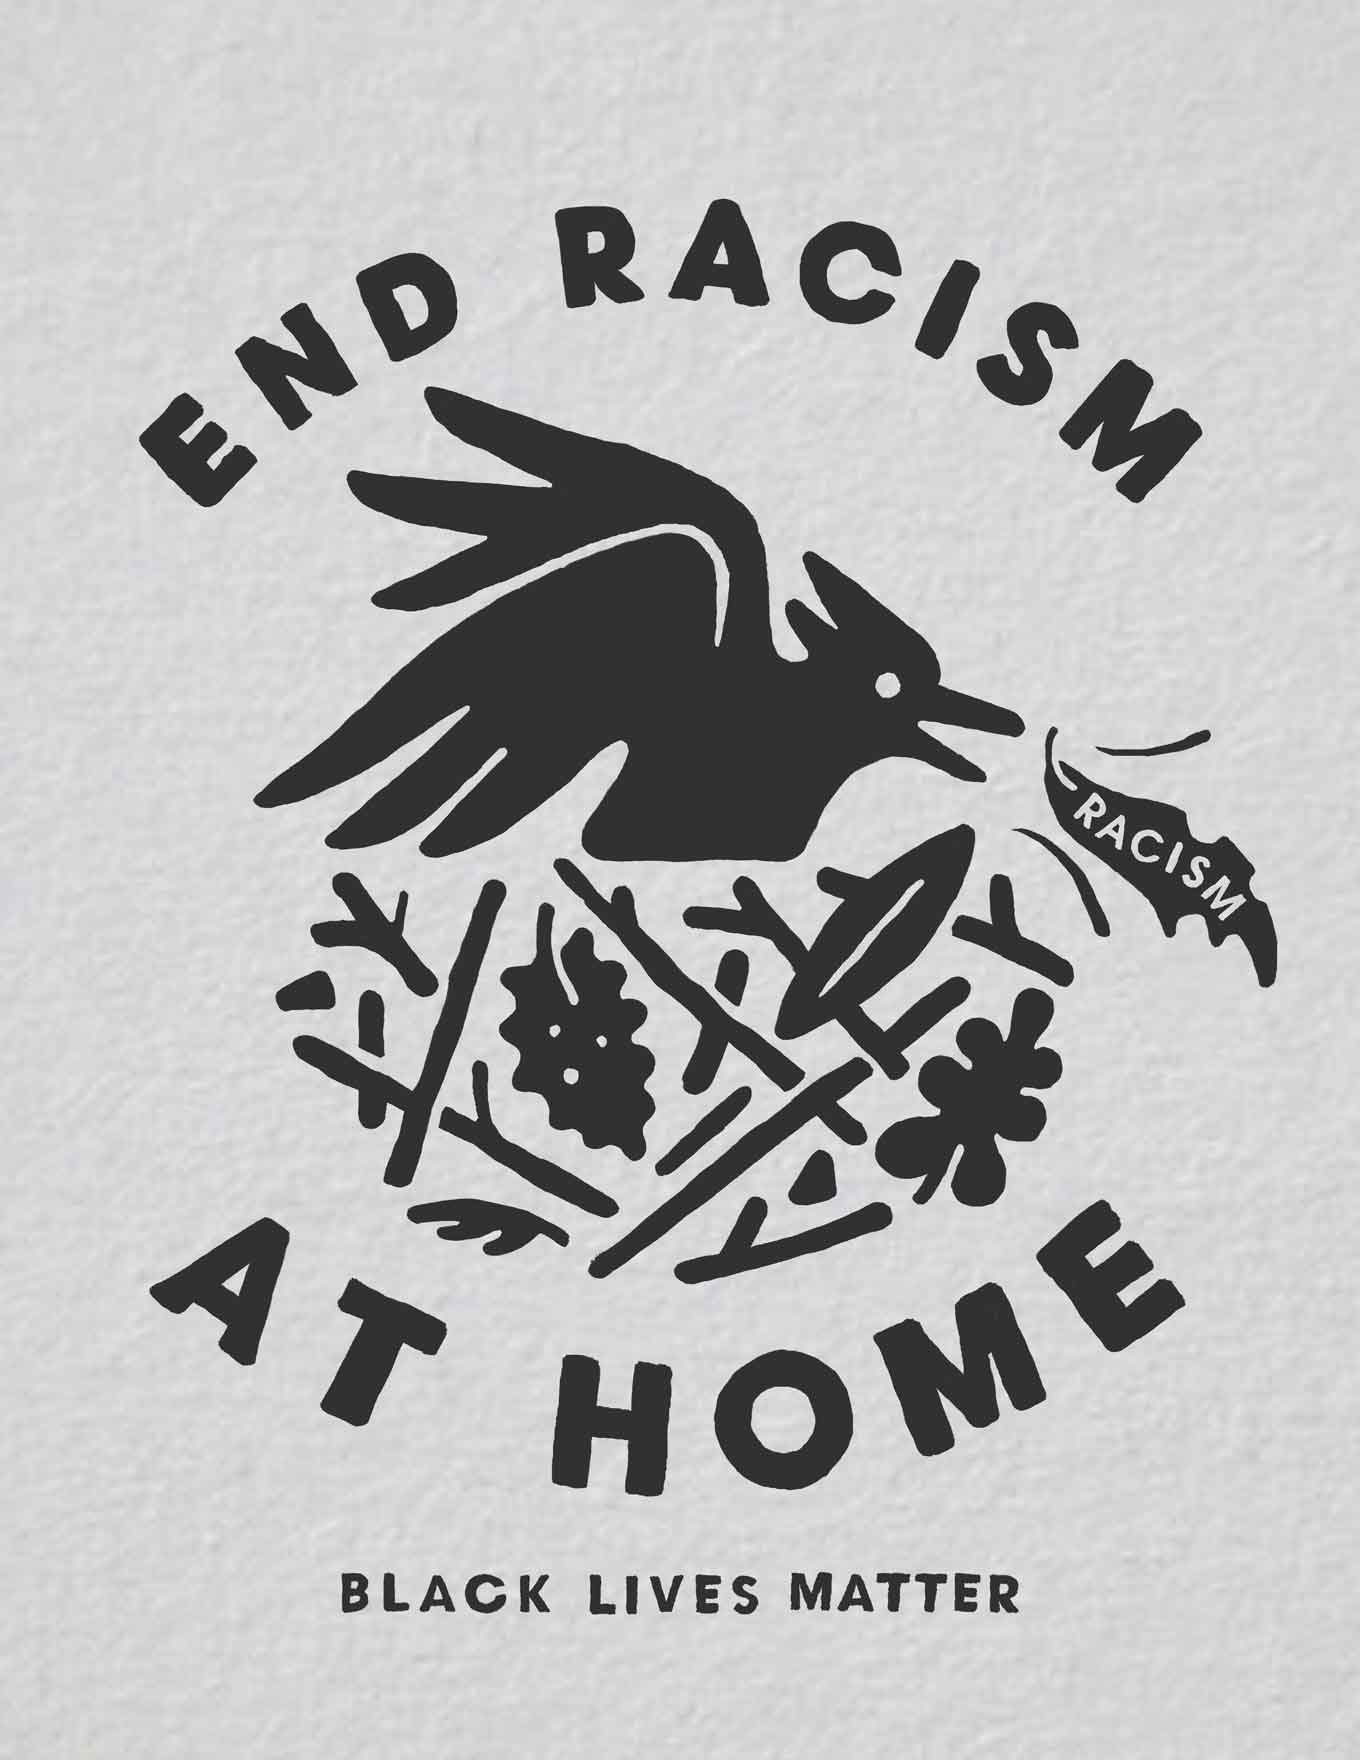 Maak een einde aan racisme thuis